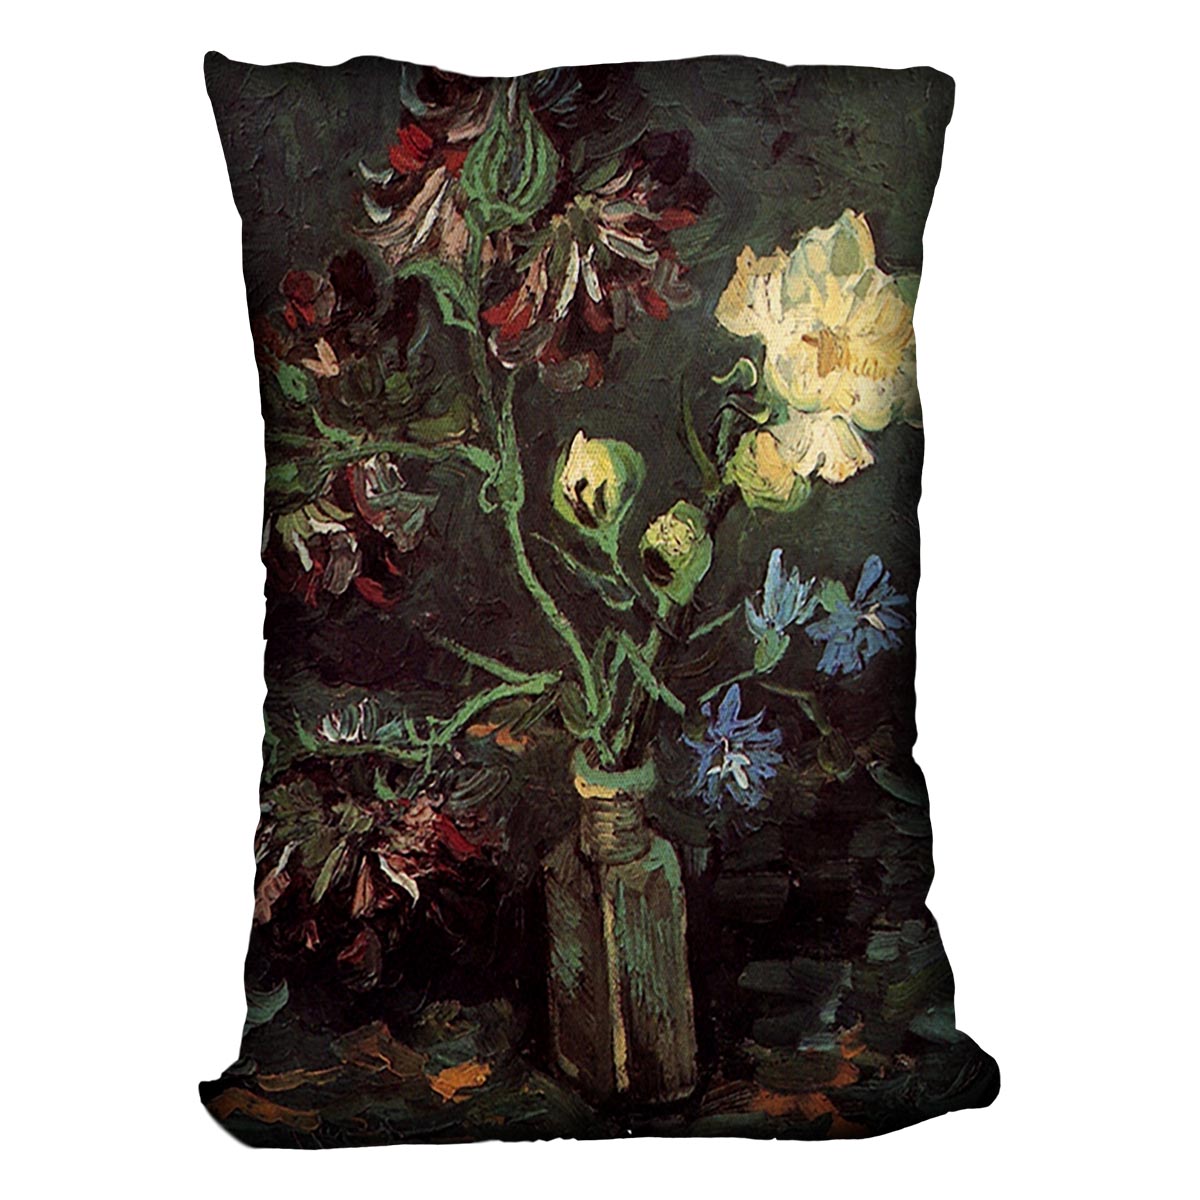 Vase with Myosotis and Peonies by Van Gogh Cushion